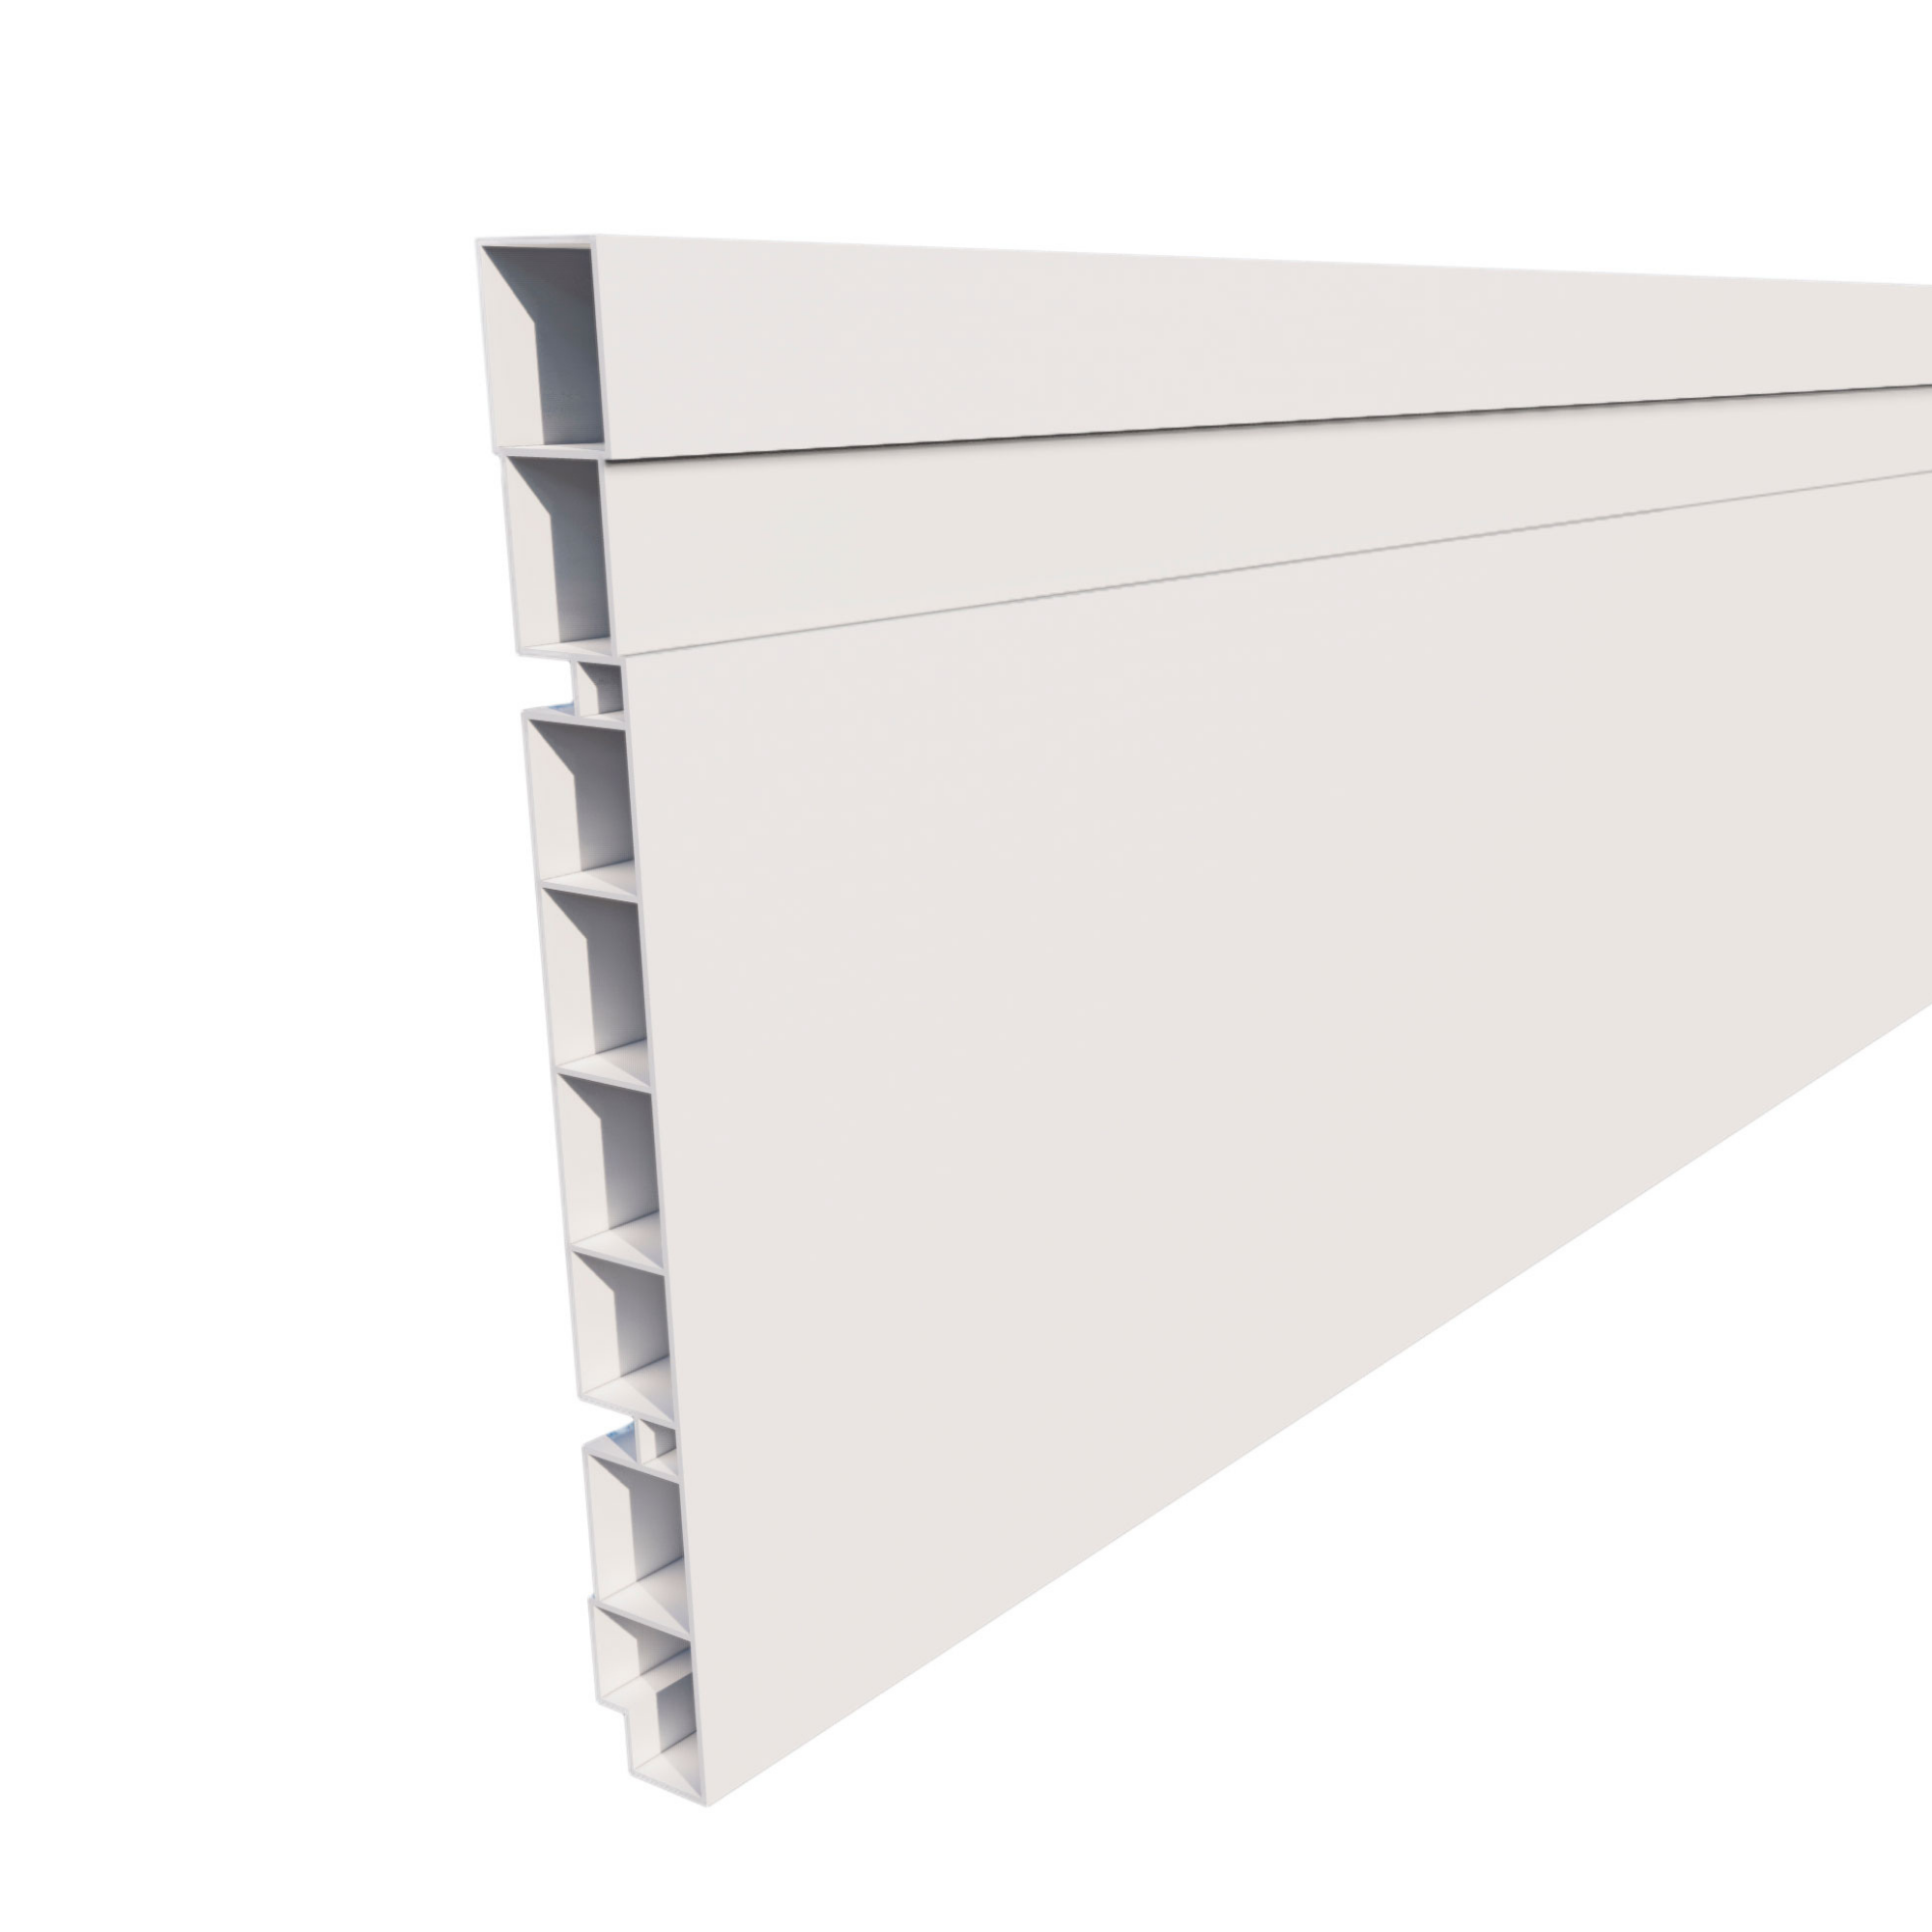 Kit 10 barras Rodapé de PVC 15 cm altura Frisado barra com 2,40M Branco - 1